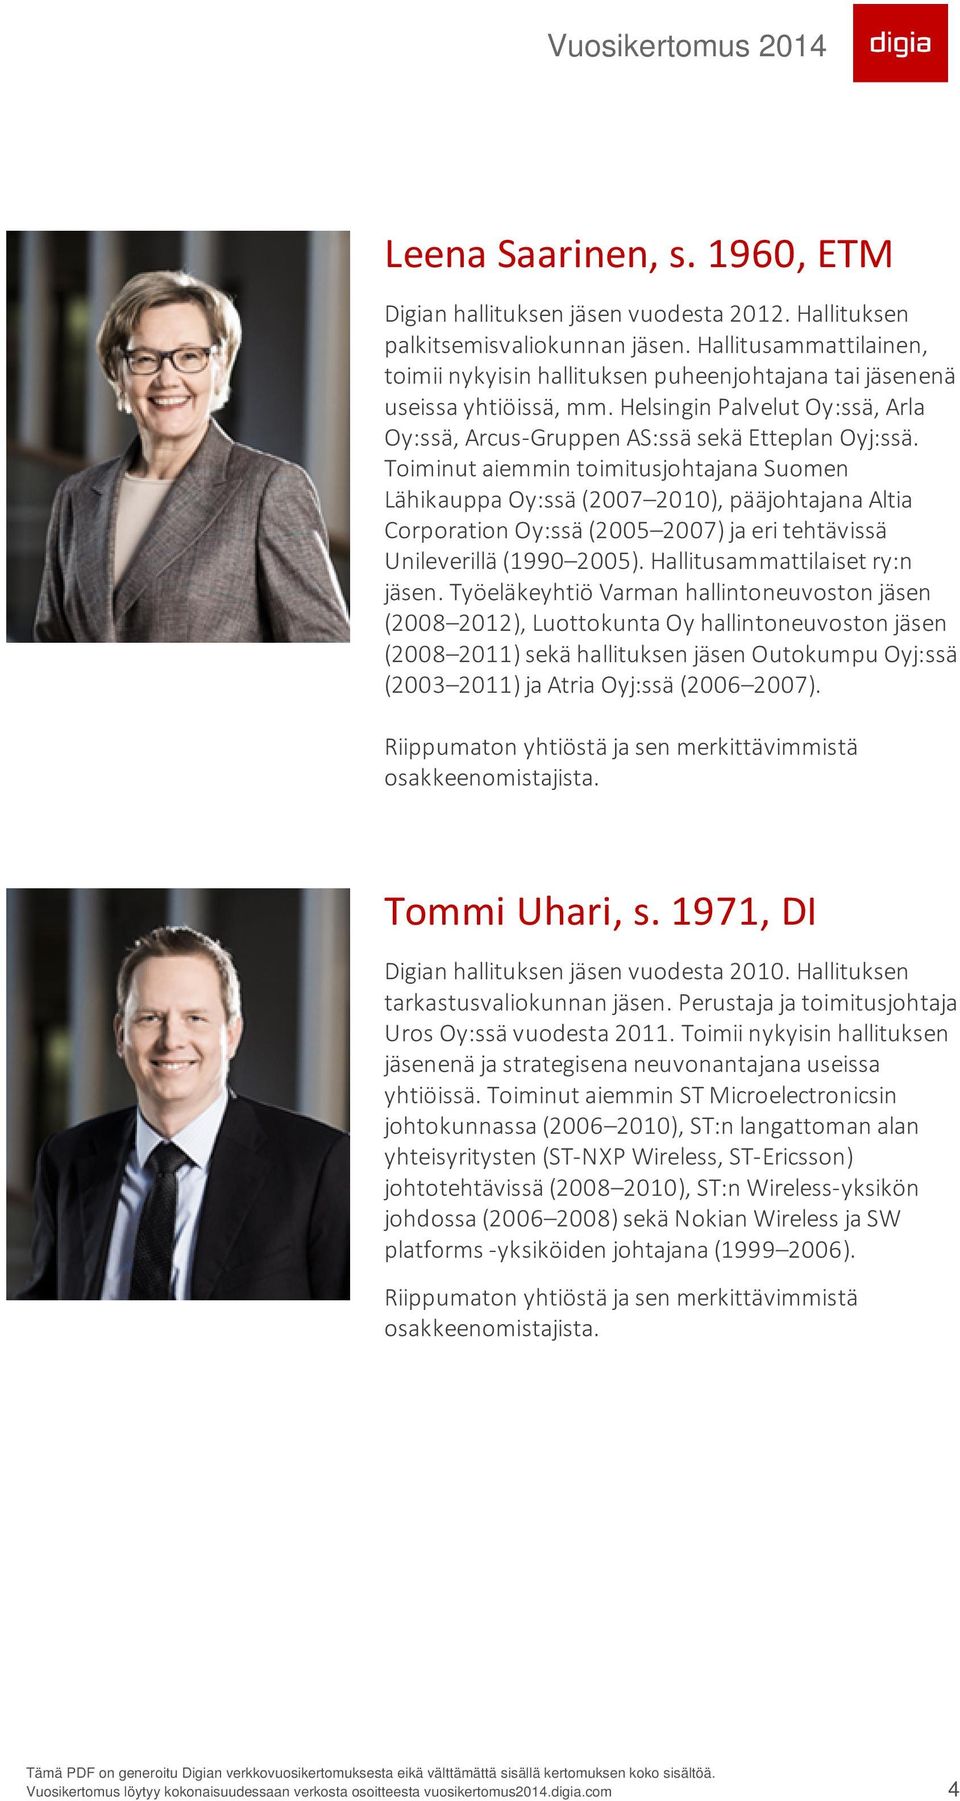 Toiminut aiemmin toimitusjohtajana Suomen Lähikauppa Oy:ssä (2007 2010), pääjohtajana Altia Corporation Oy:ssä (2005 2007) ja eri tehtävissä Unileverillä (1990 2005). Hallitusammattilaiset ry:n jäsen.